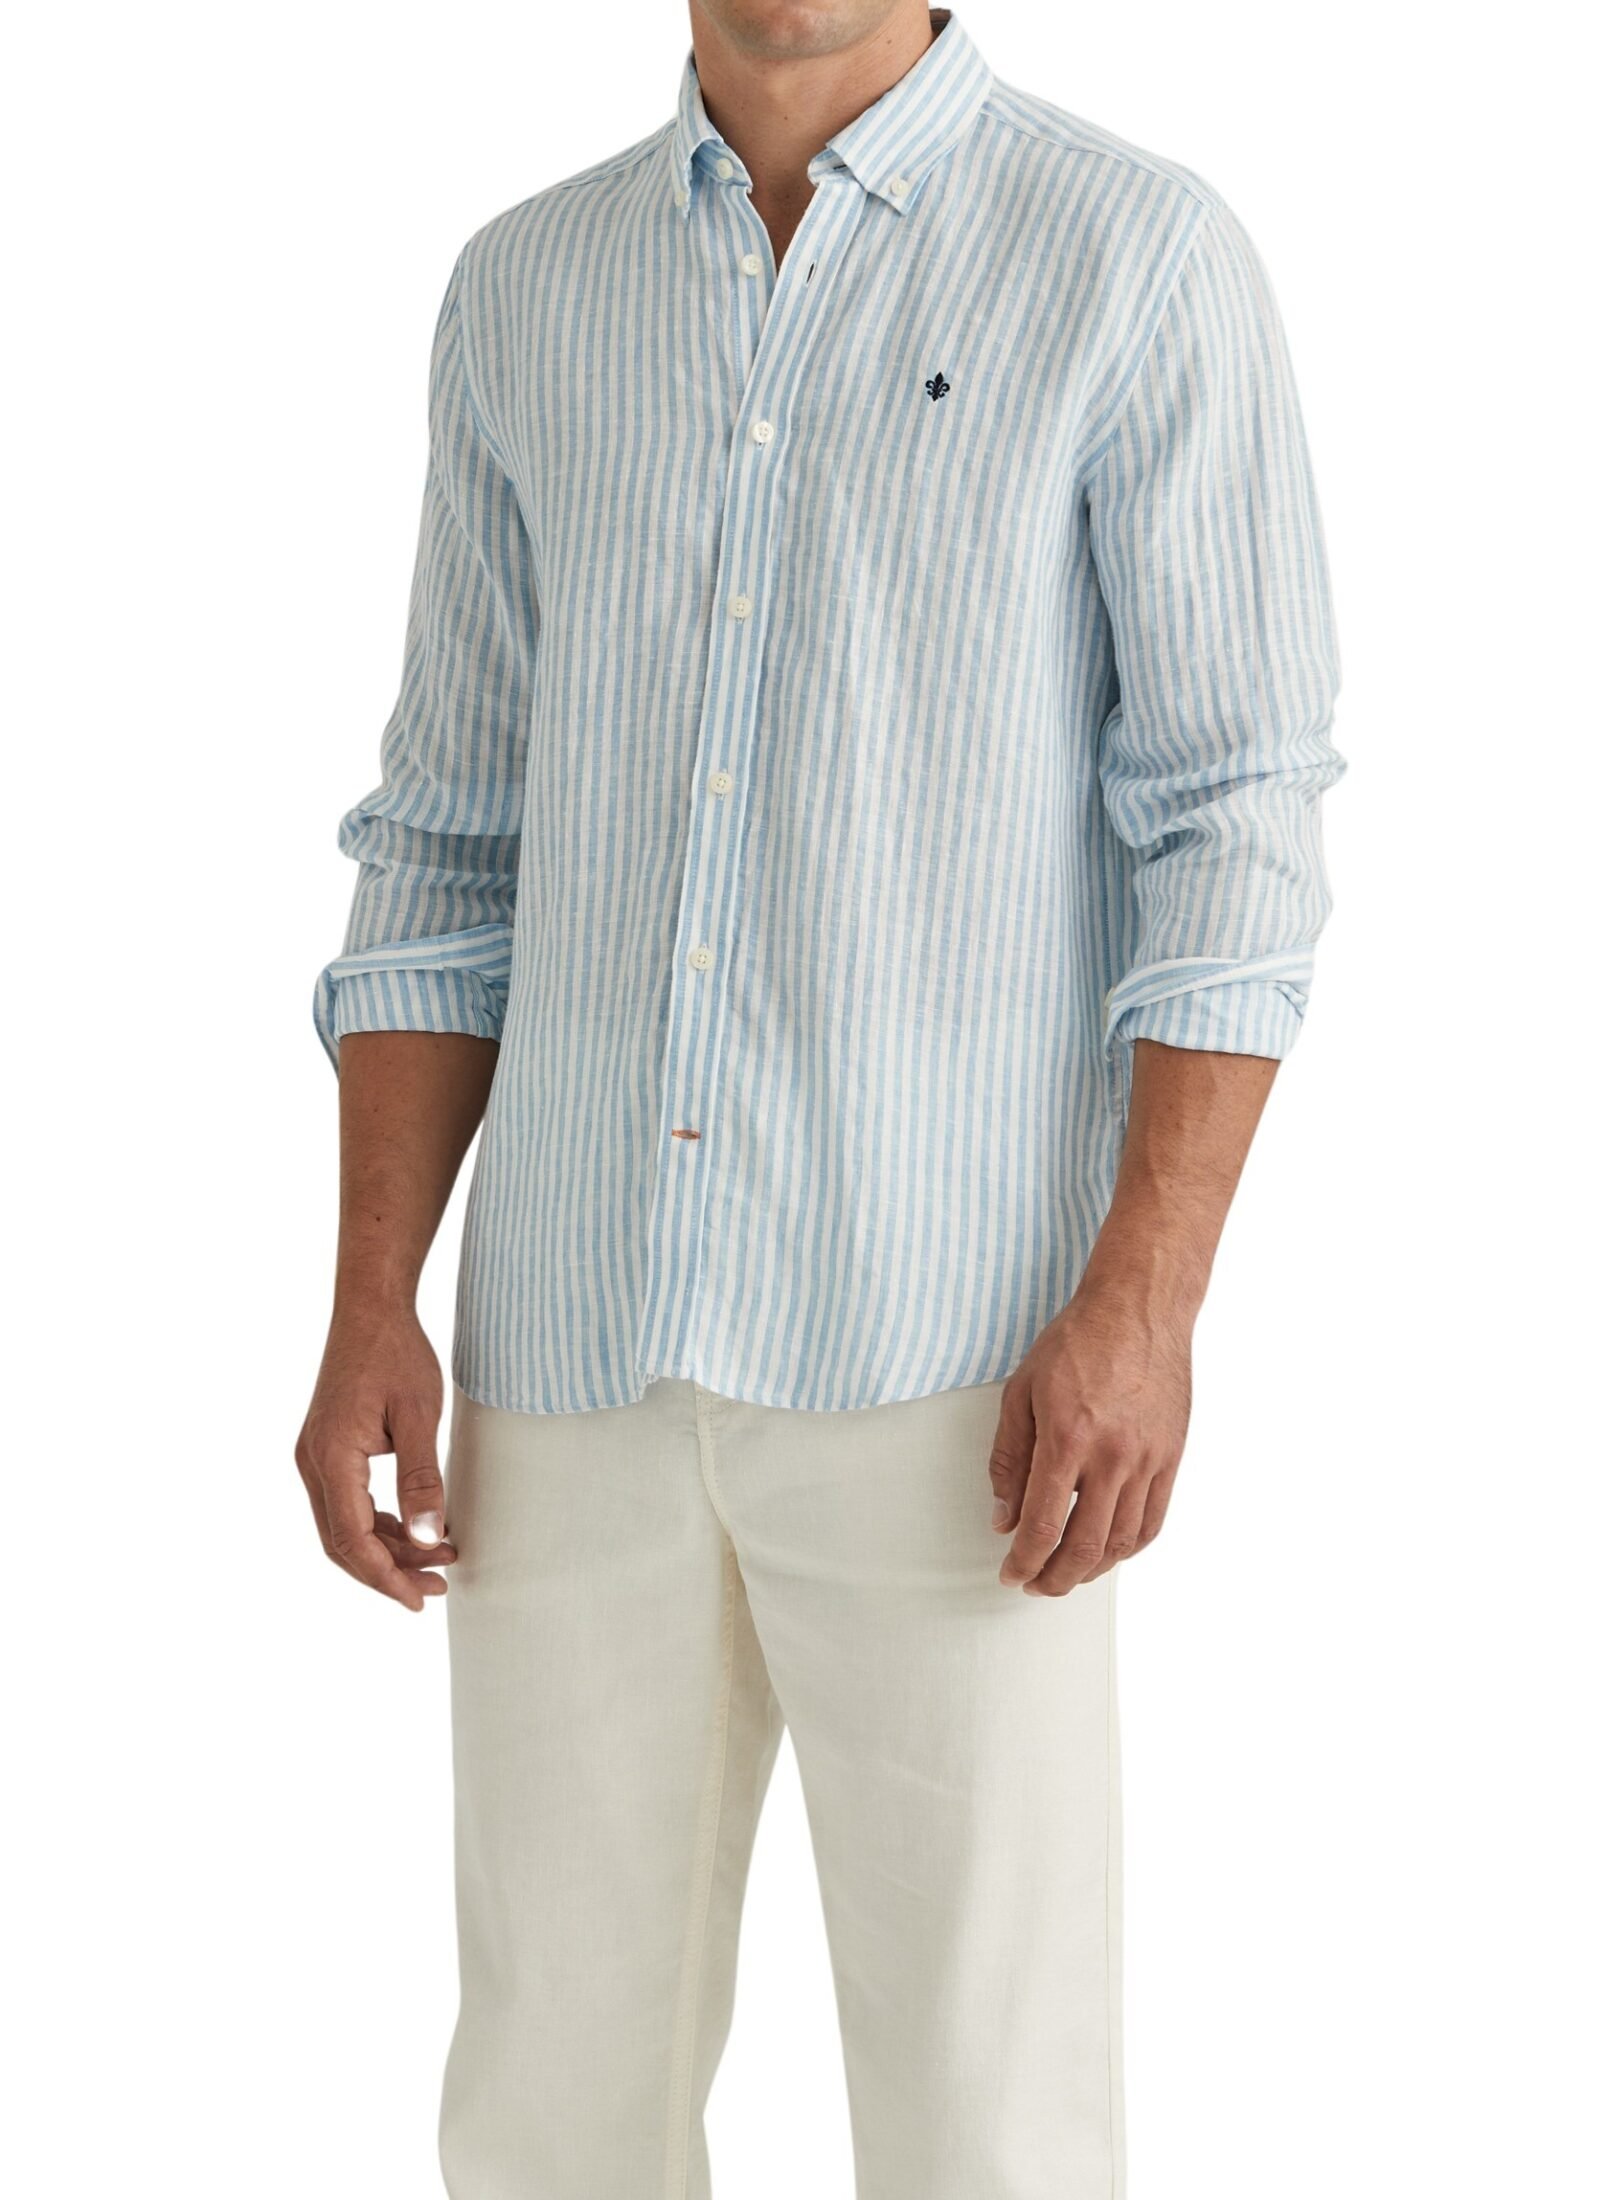 801676-douglas-linen-stripe-shirt-classic-fit-56-blue-1